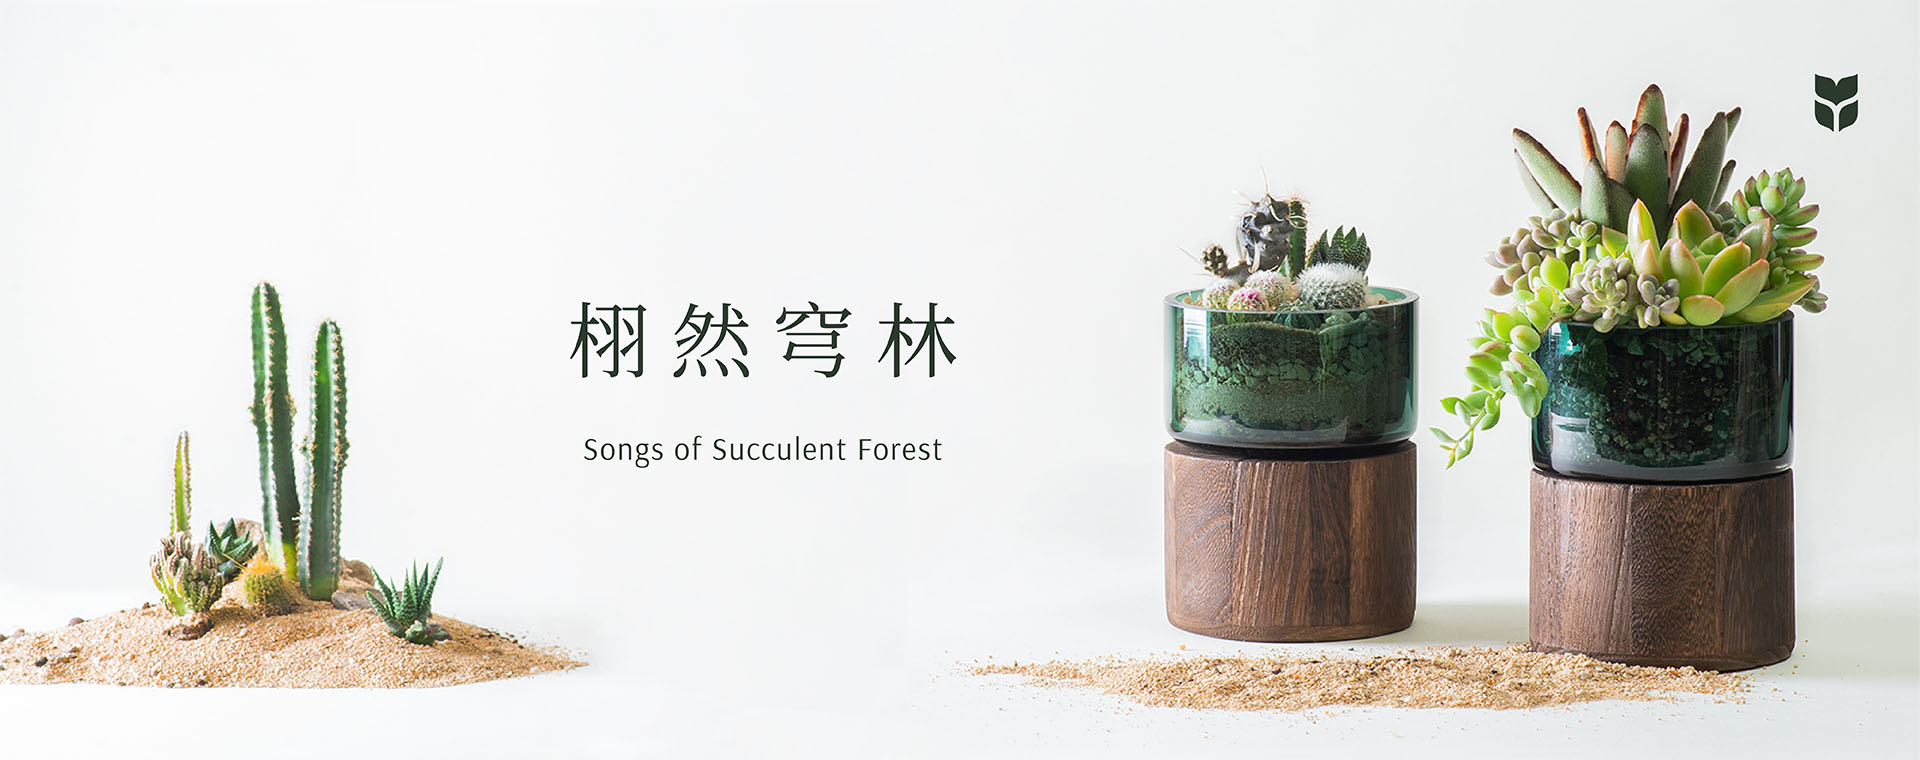 [ 多肉組盆 ] 栩然穹林 Songs of Succulent Forest Banner 工作區域 12 拷貝